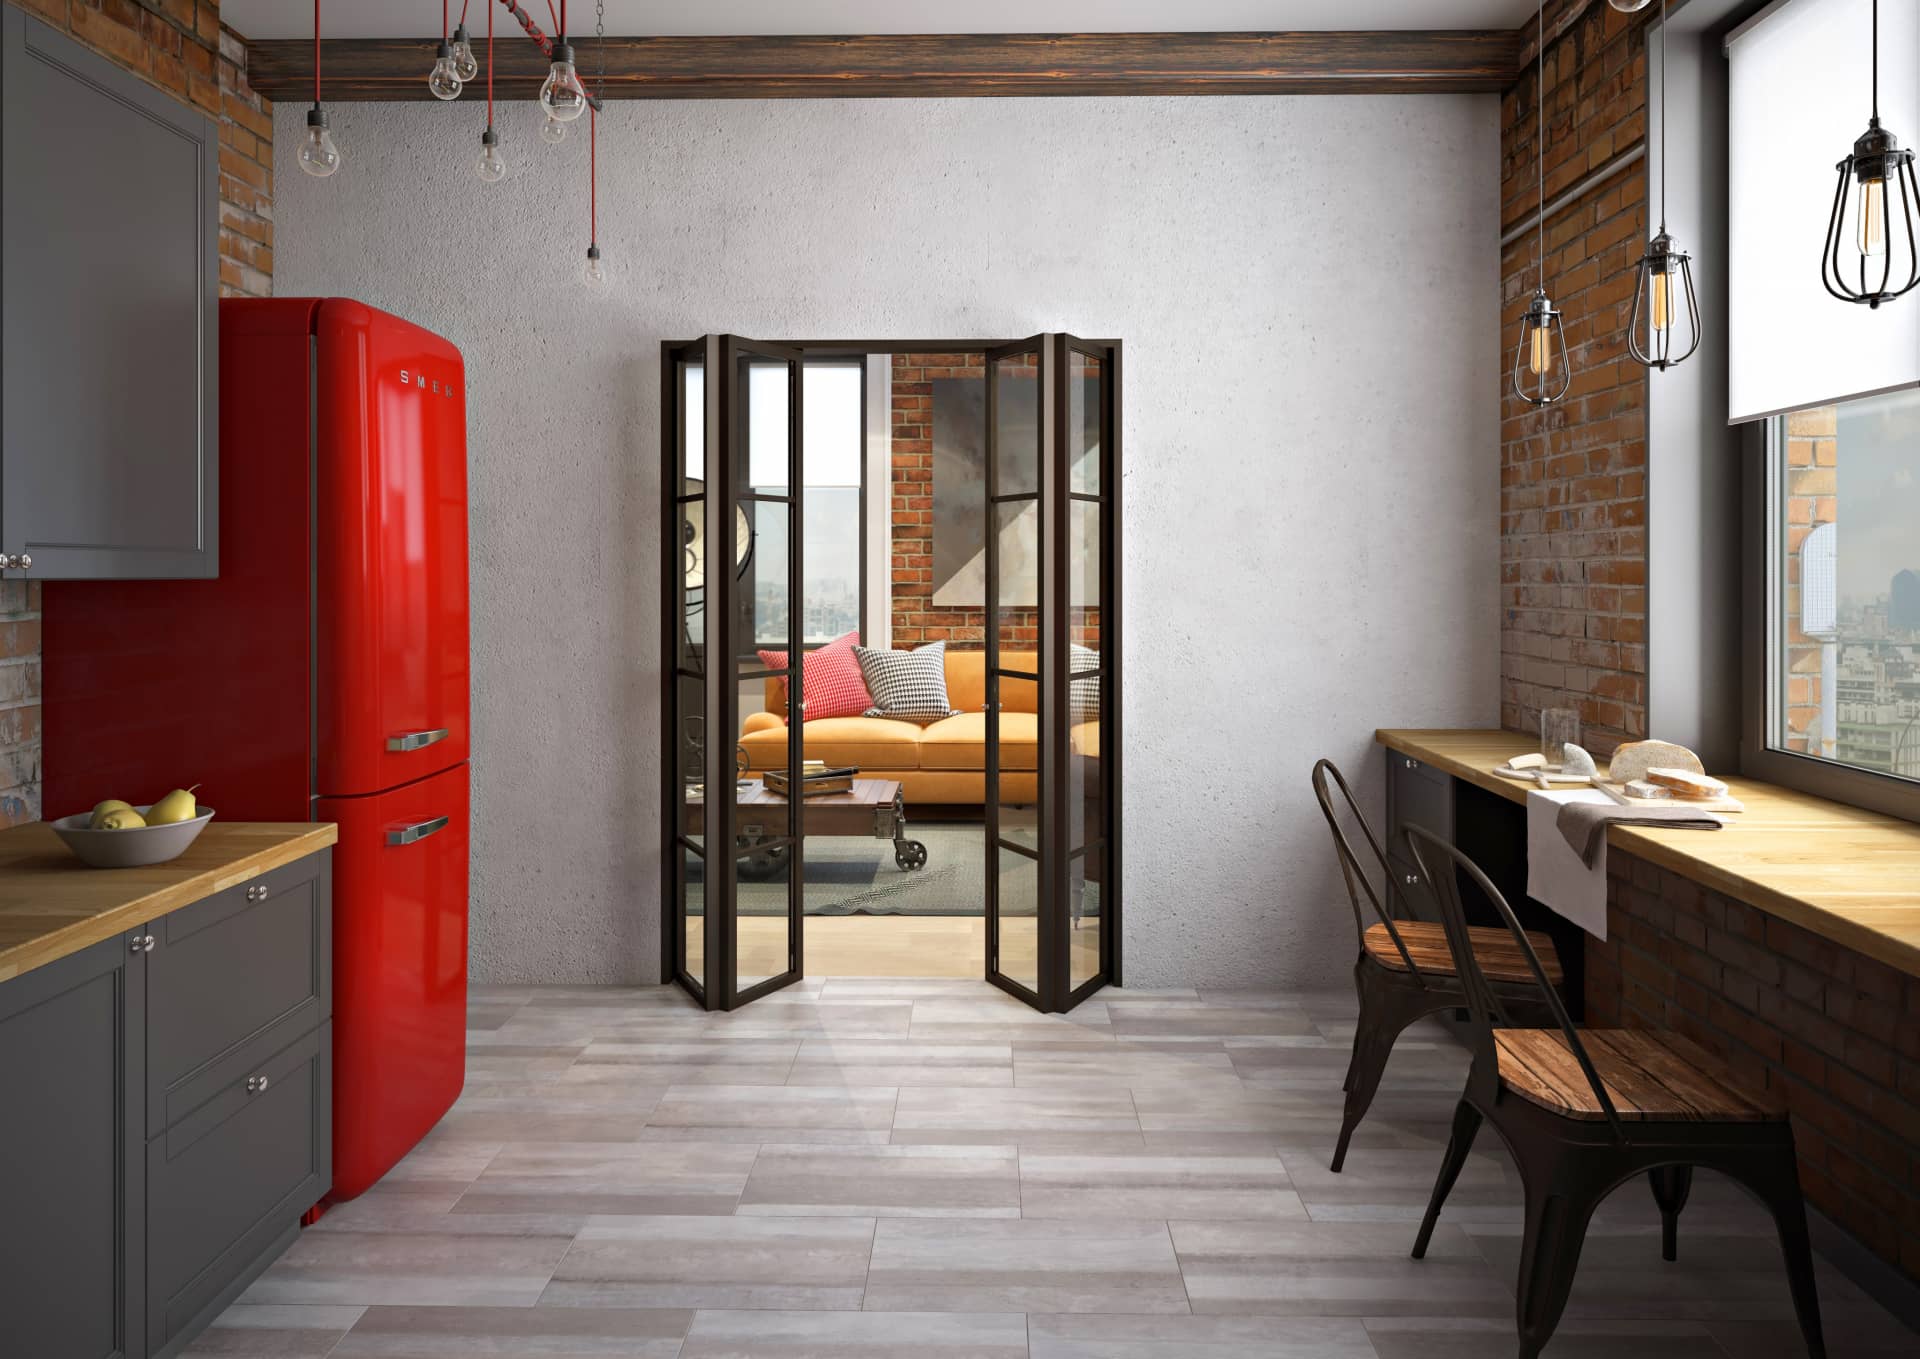 Стеклянные двери разделенные на прямоугольники, разделяющие гостиную от кухни